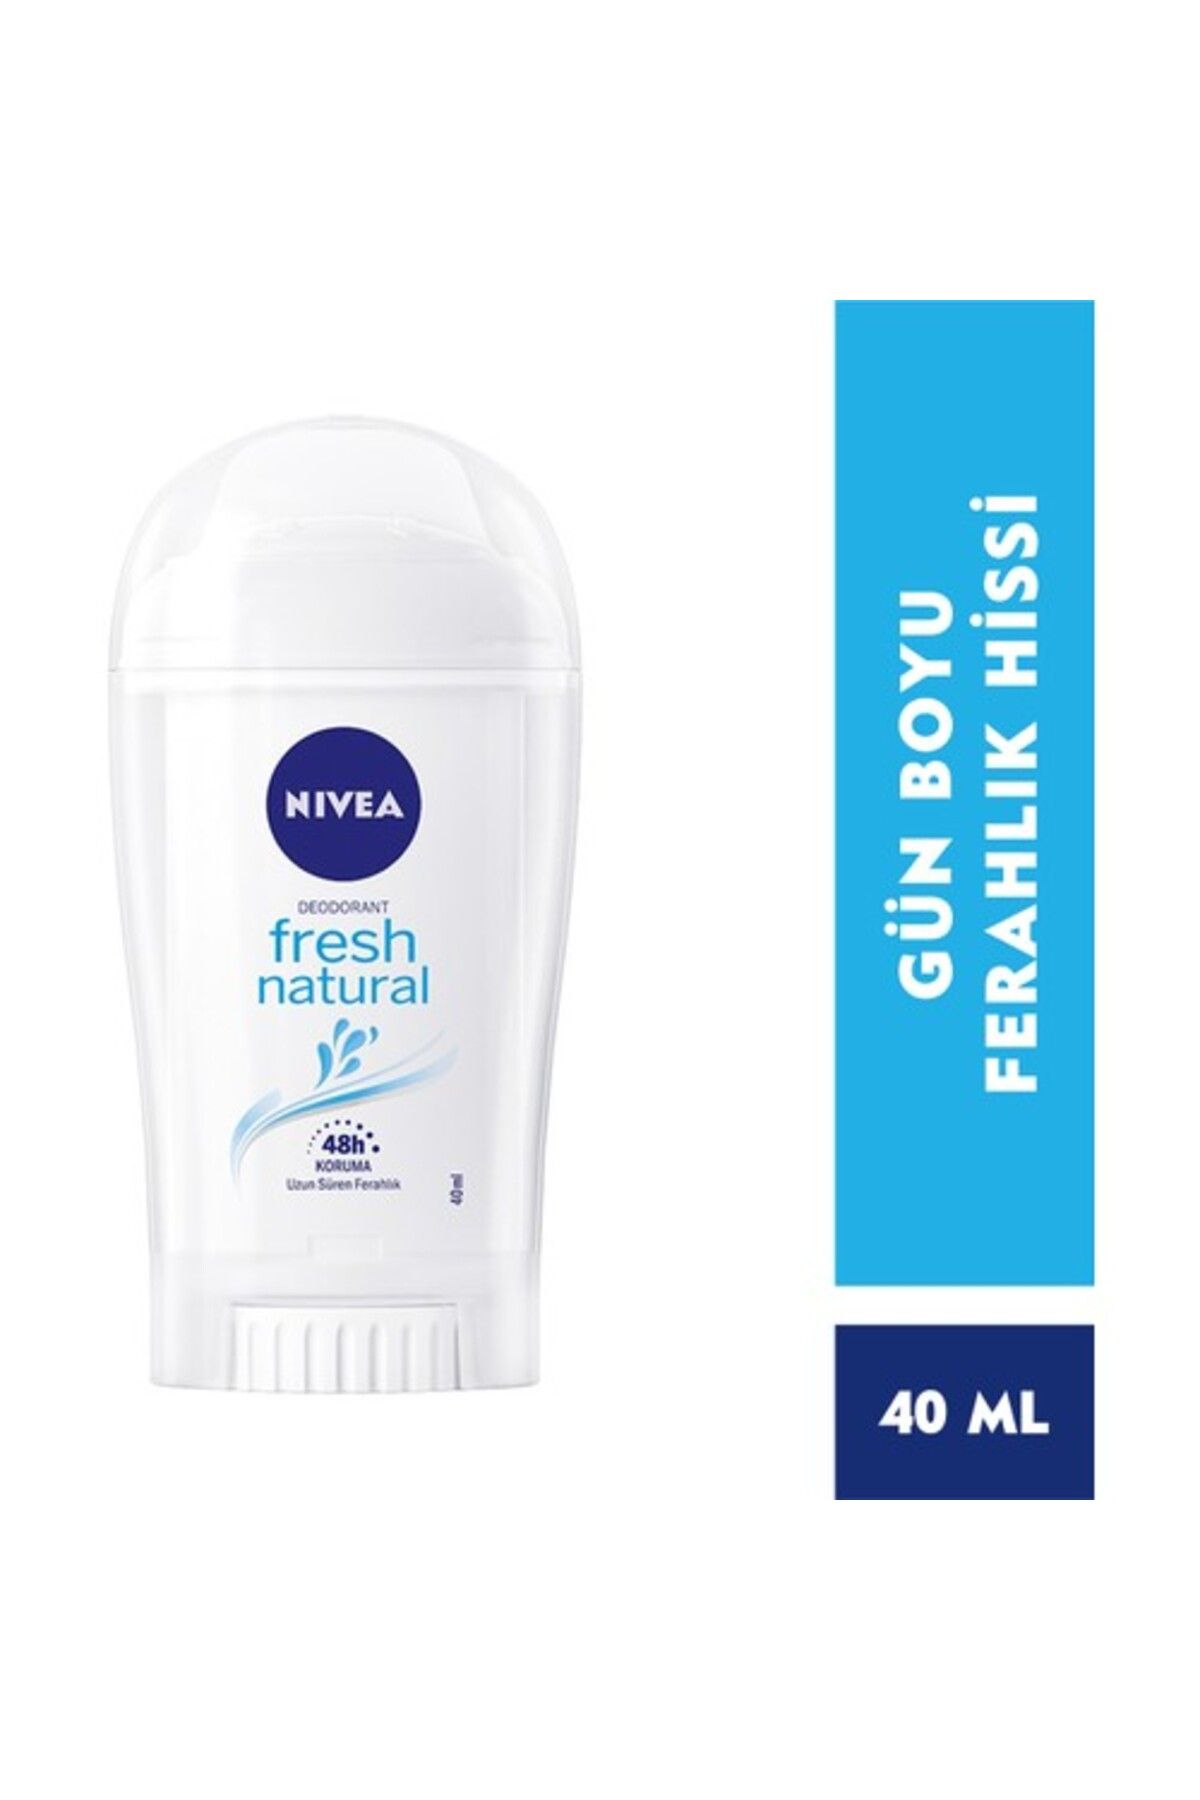 NIVEA Kadın Stick Deodorant Fresh Natural Ter Ve Ter Kokusuna Karşı 48 Saat Deodorant Koruması 40ml